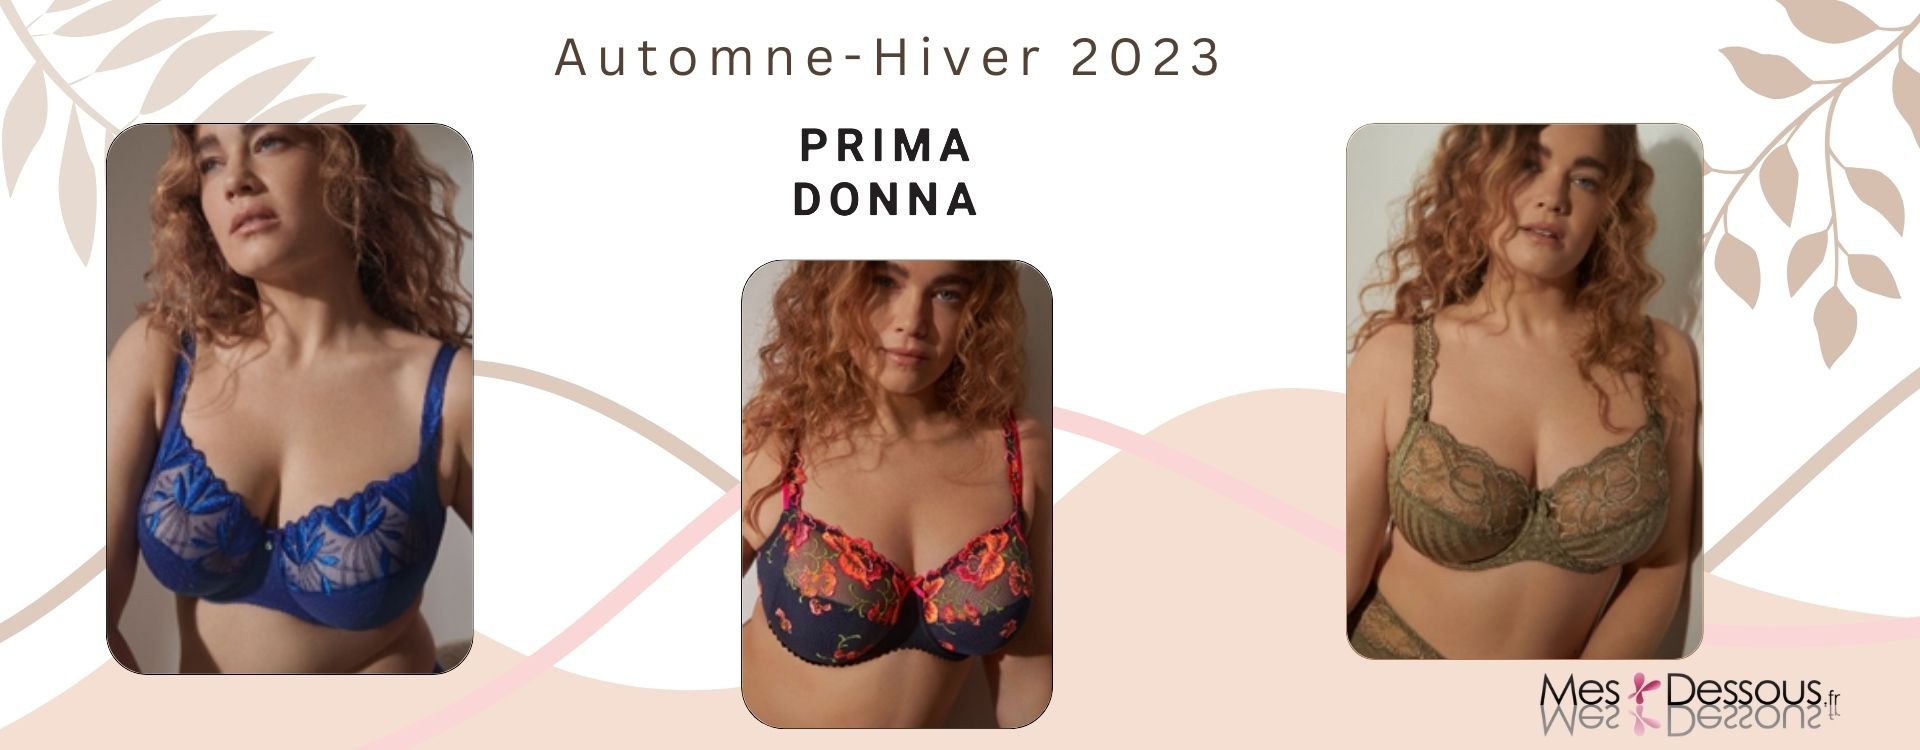 Prima Donna : ce qui vous attend pour les nouveautés Automne Hiver 2023